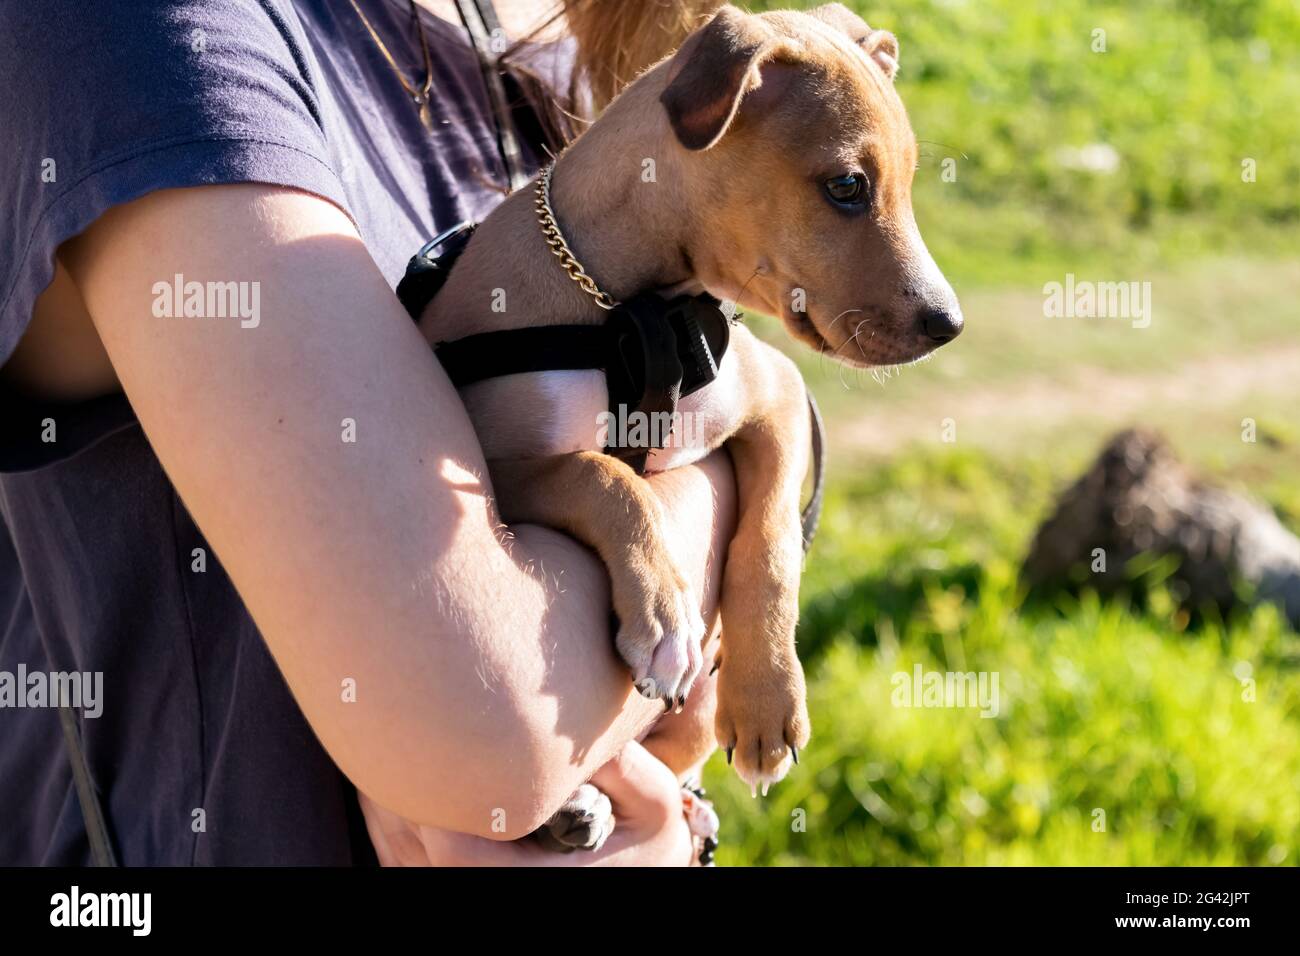 Nahaufnahme eines braunen Halbbrüten-Welpen, der von einer kaukasischen Person getragen wird, sie befinden sich links vom Foto, so dass der Hund nach rechts schaut Stockfoto